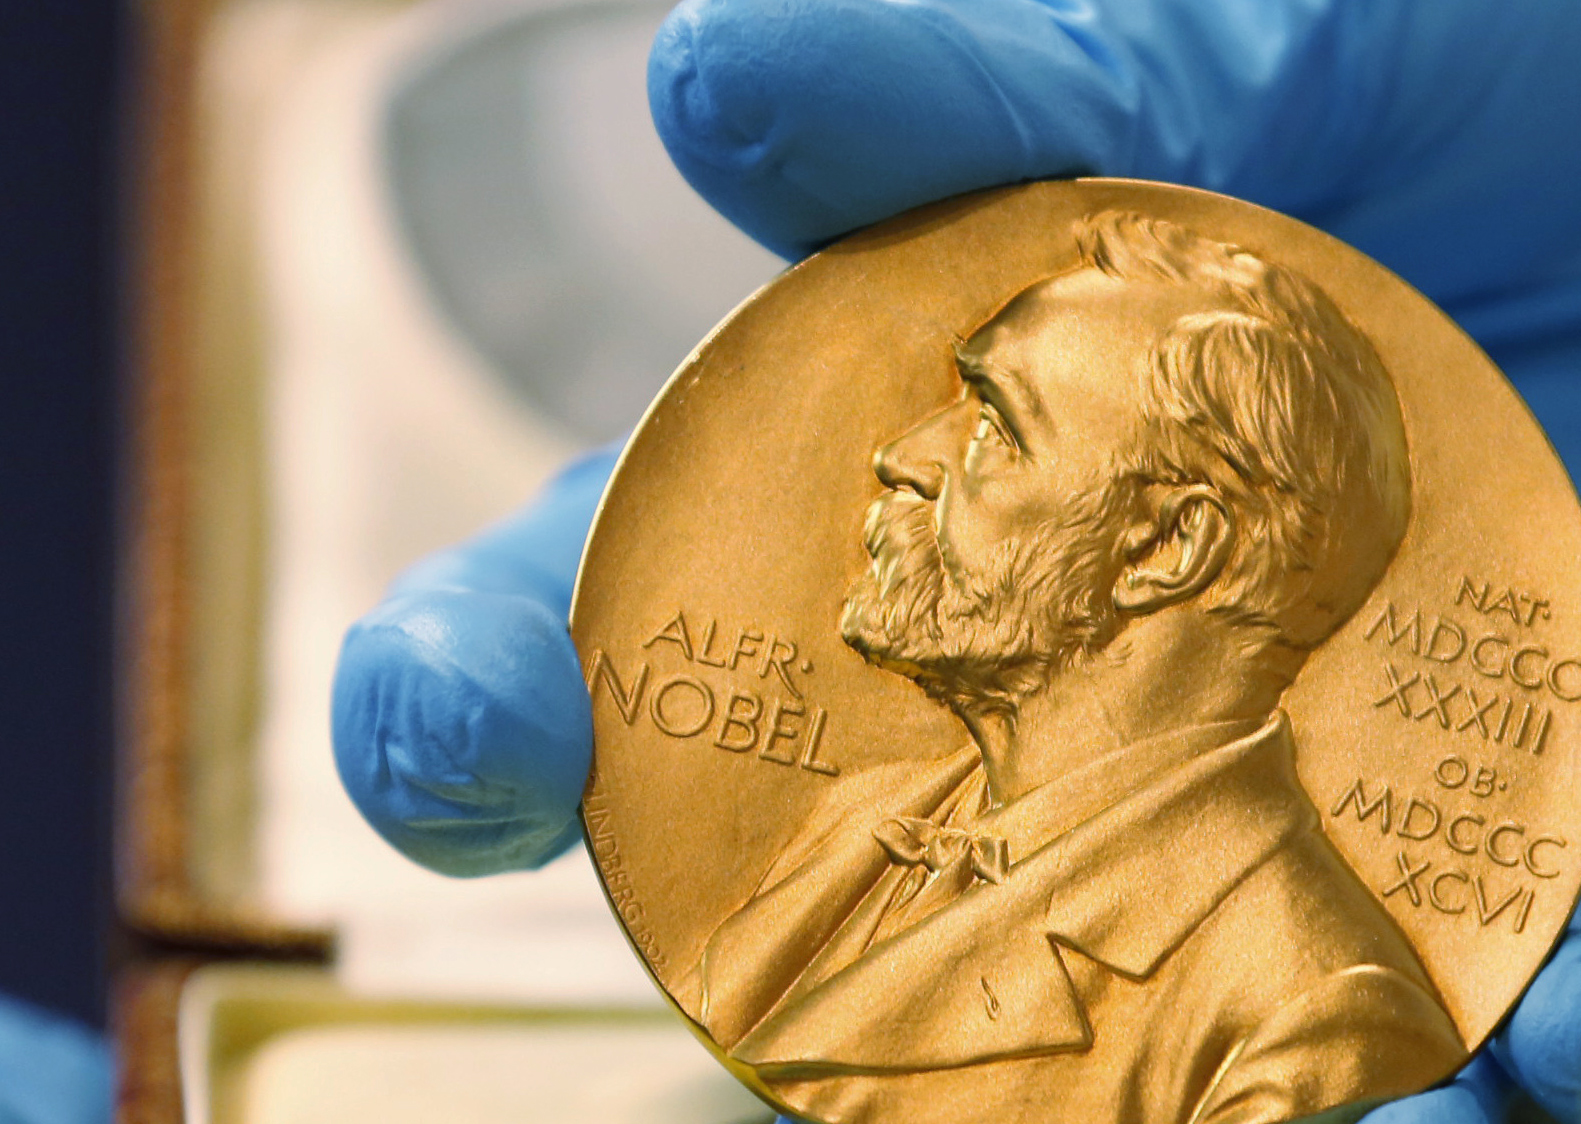 Скандално изтичане на имена на лауреати за ”Нобел”